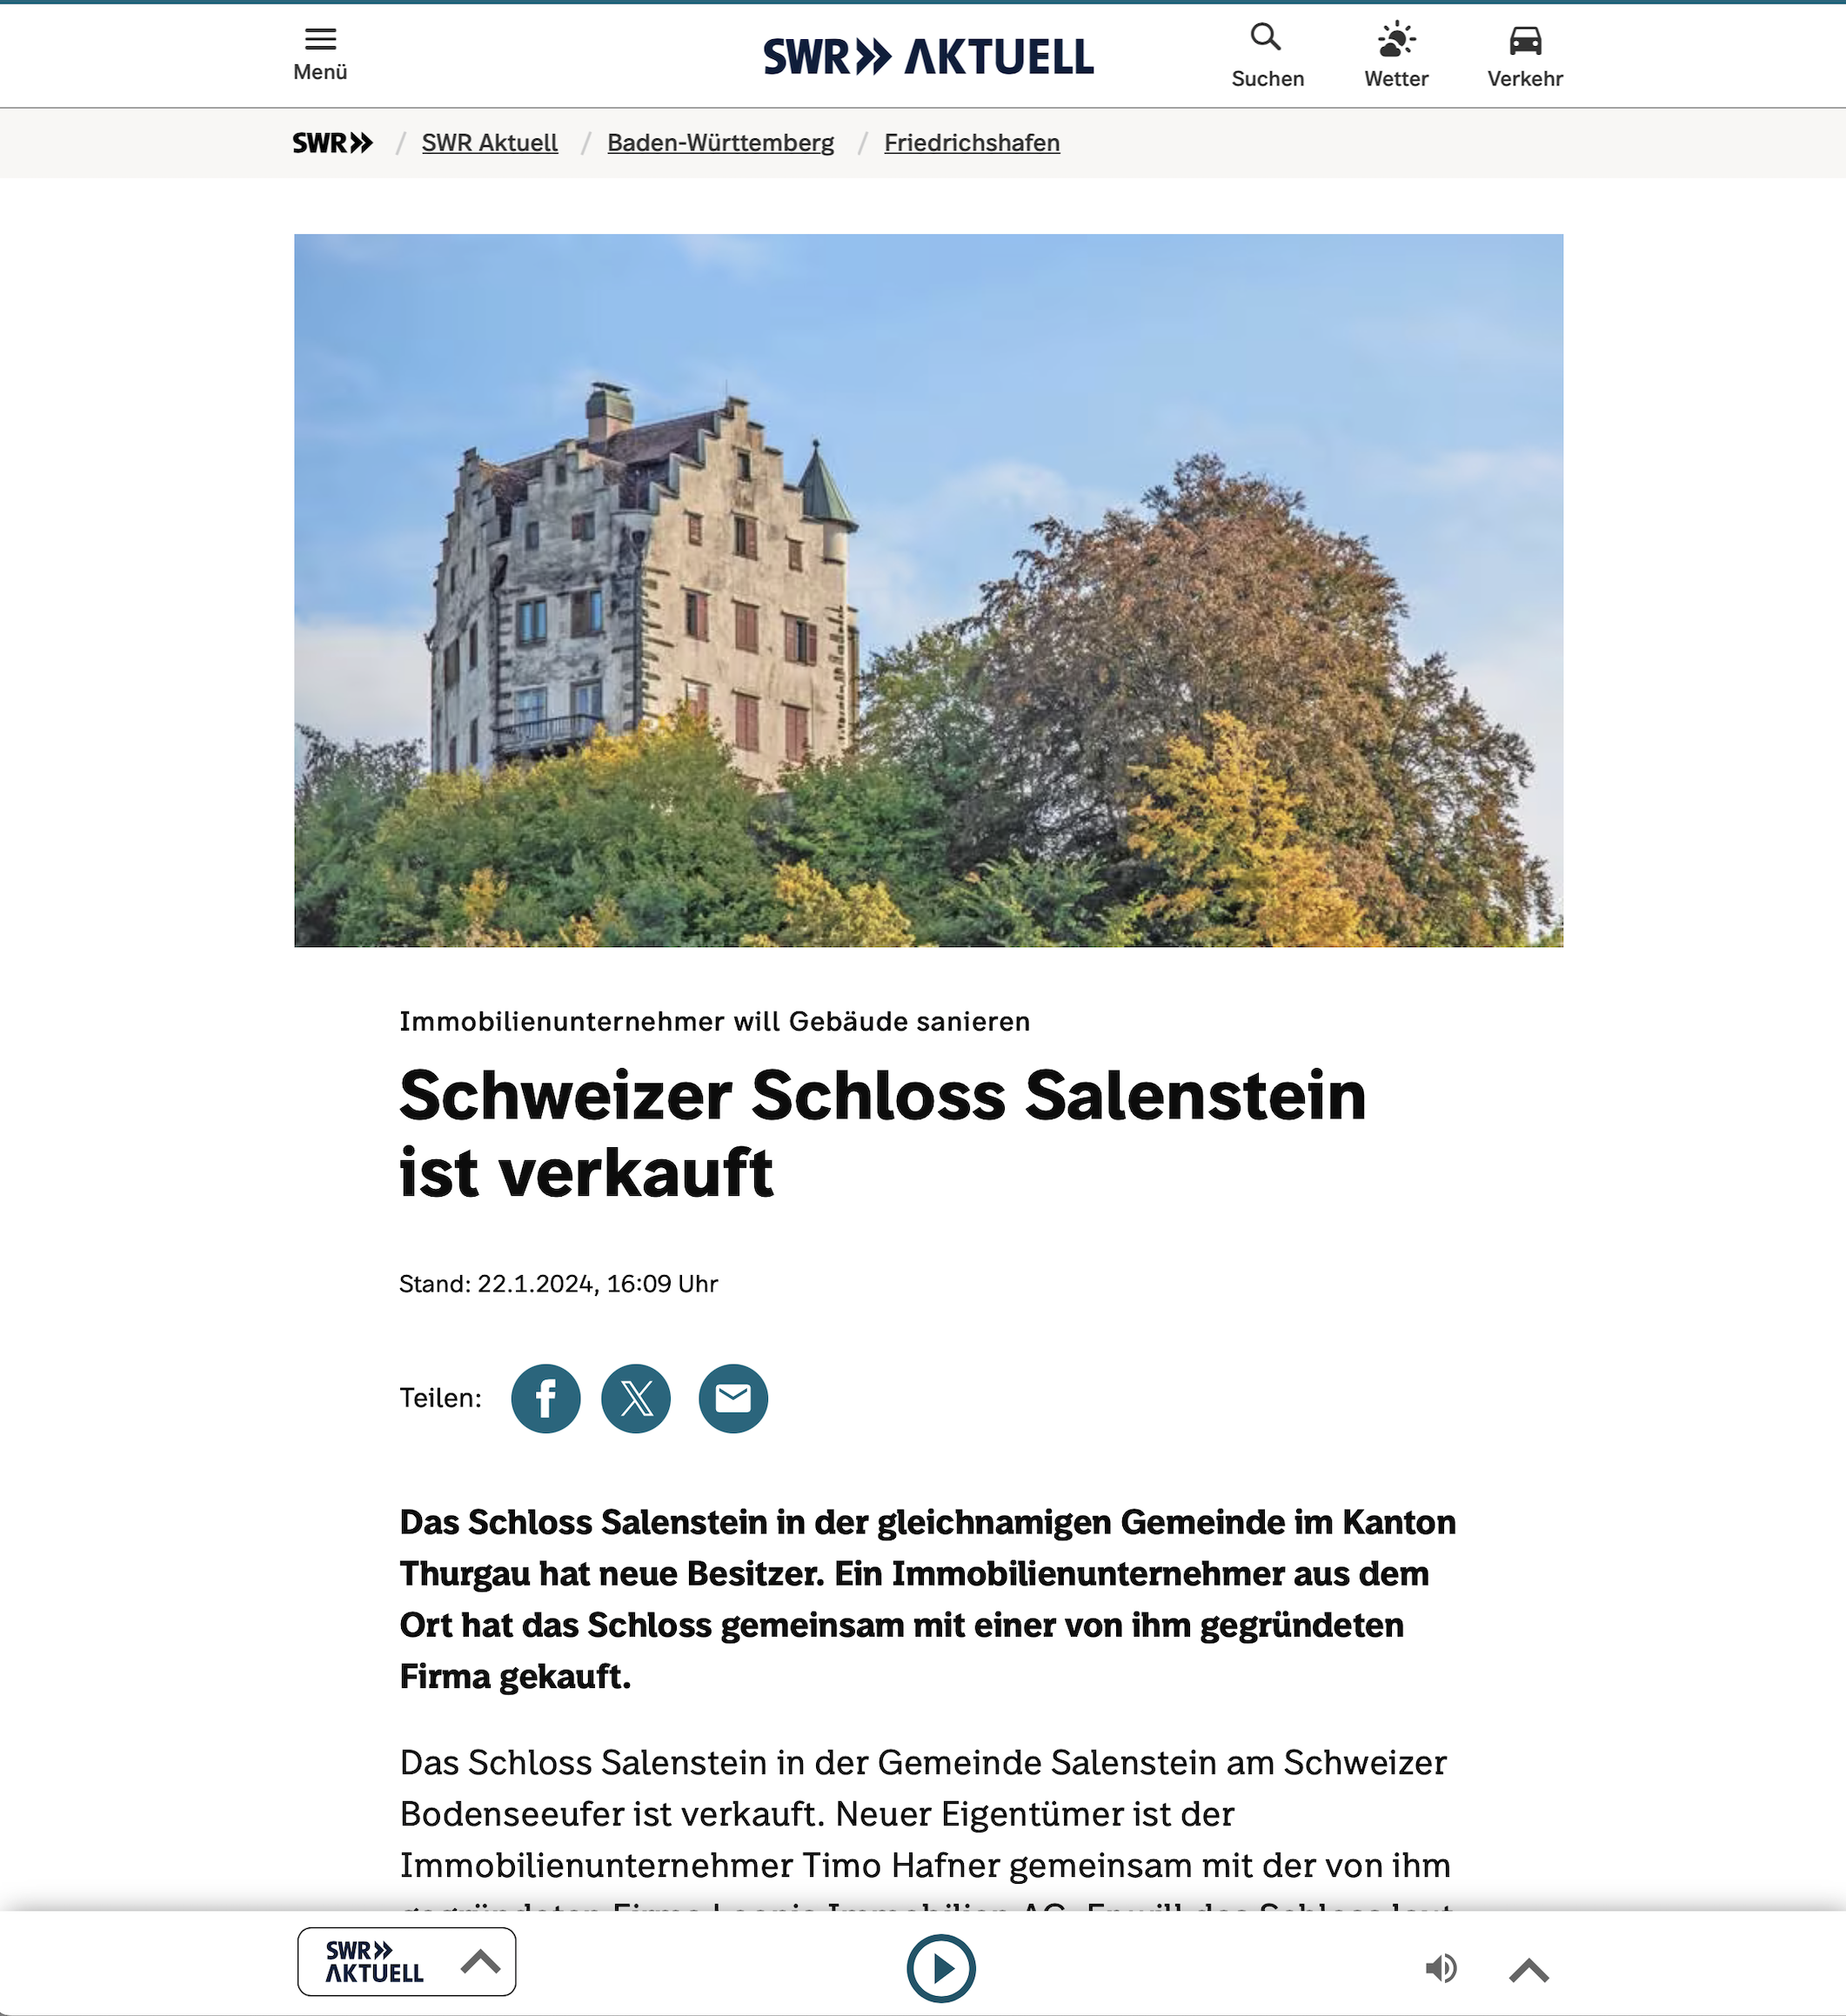 Das Schweizer Schloss Salenstein ist verkauft